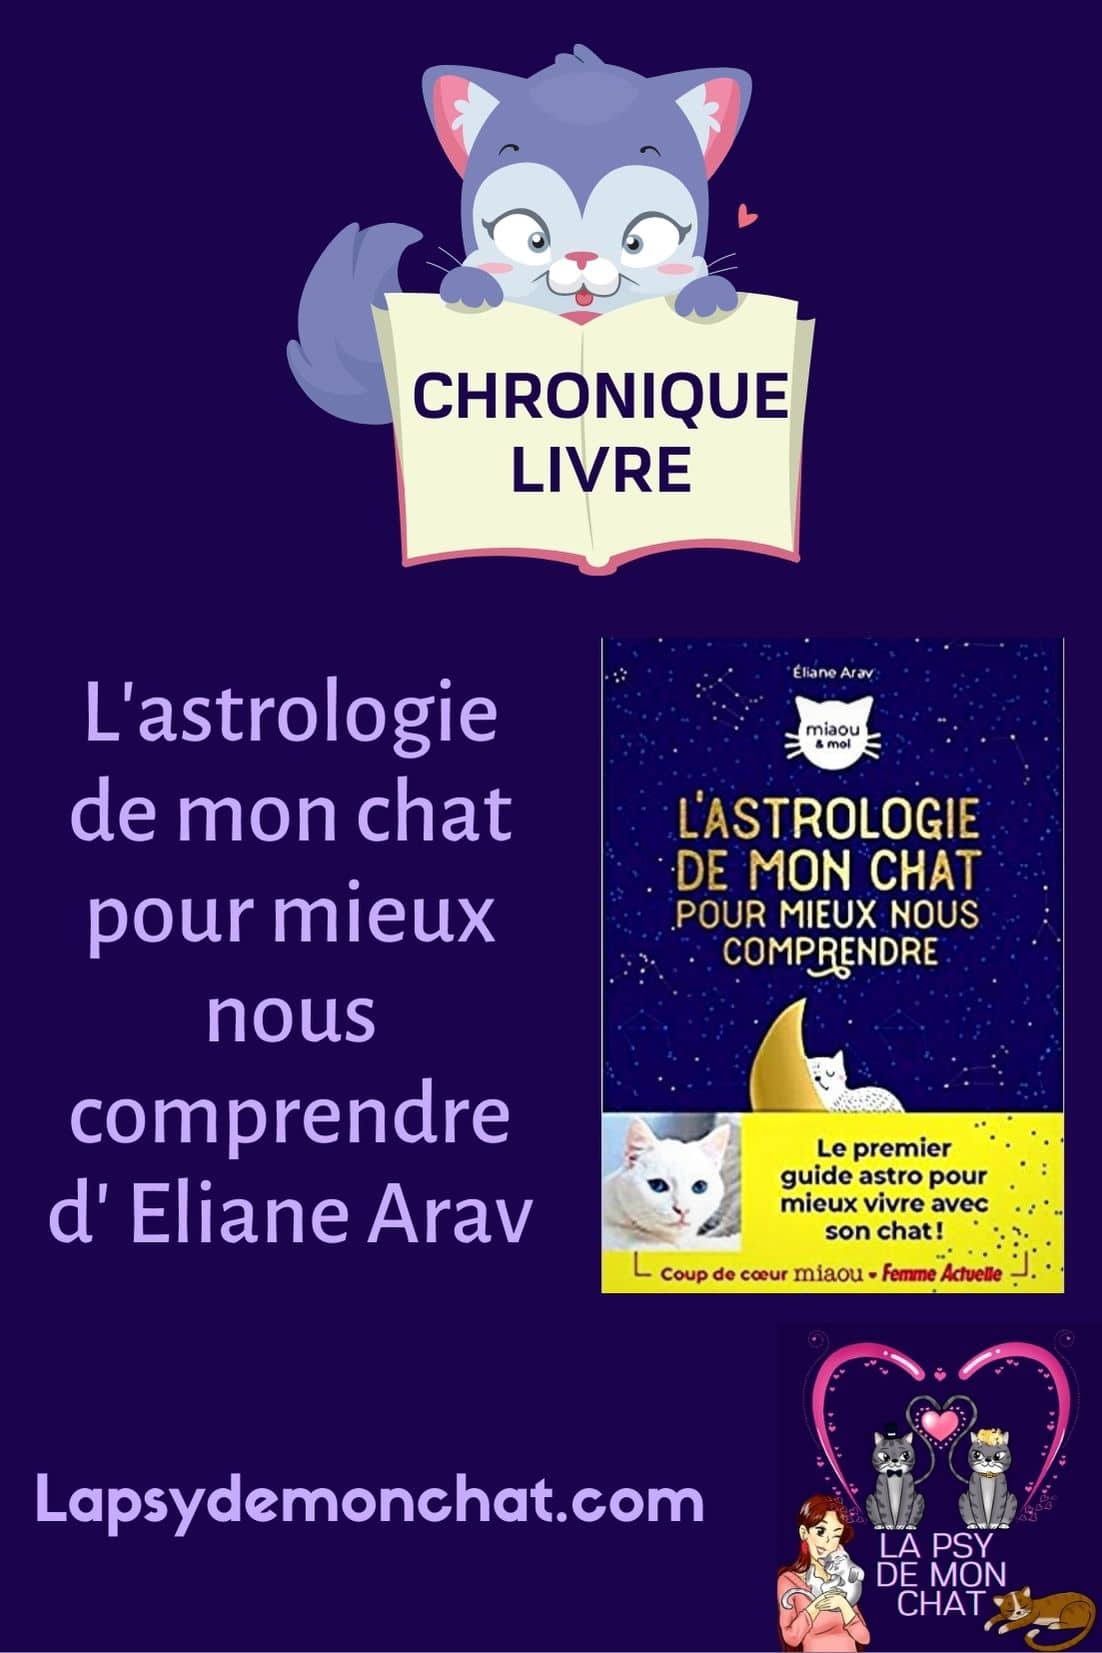 L’astrologie de mon chat pour mieux nous comprendre d’ Eliane Arav - pinterest